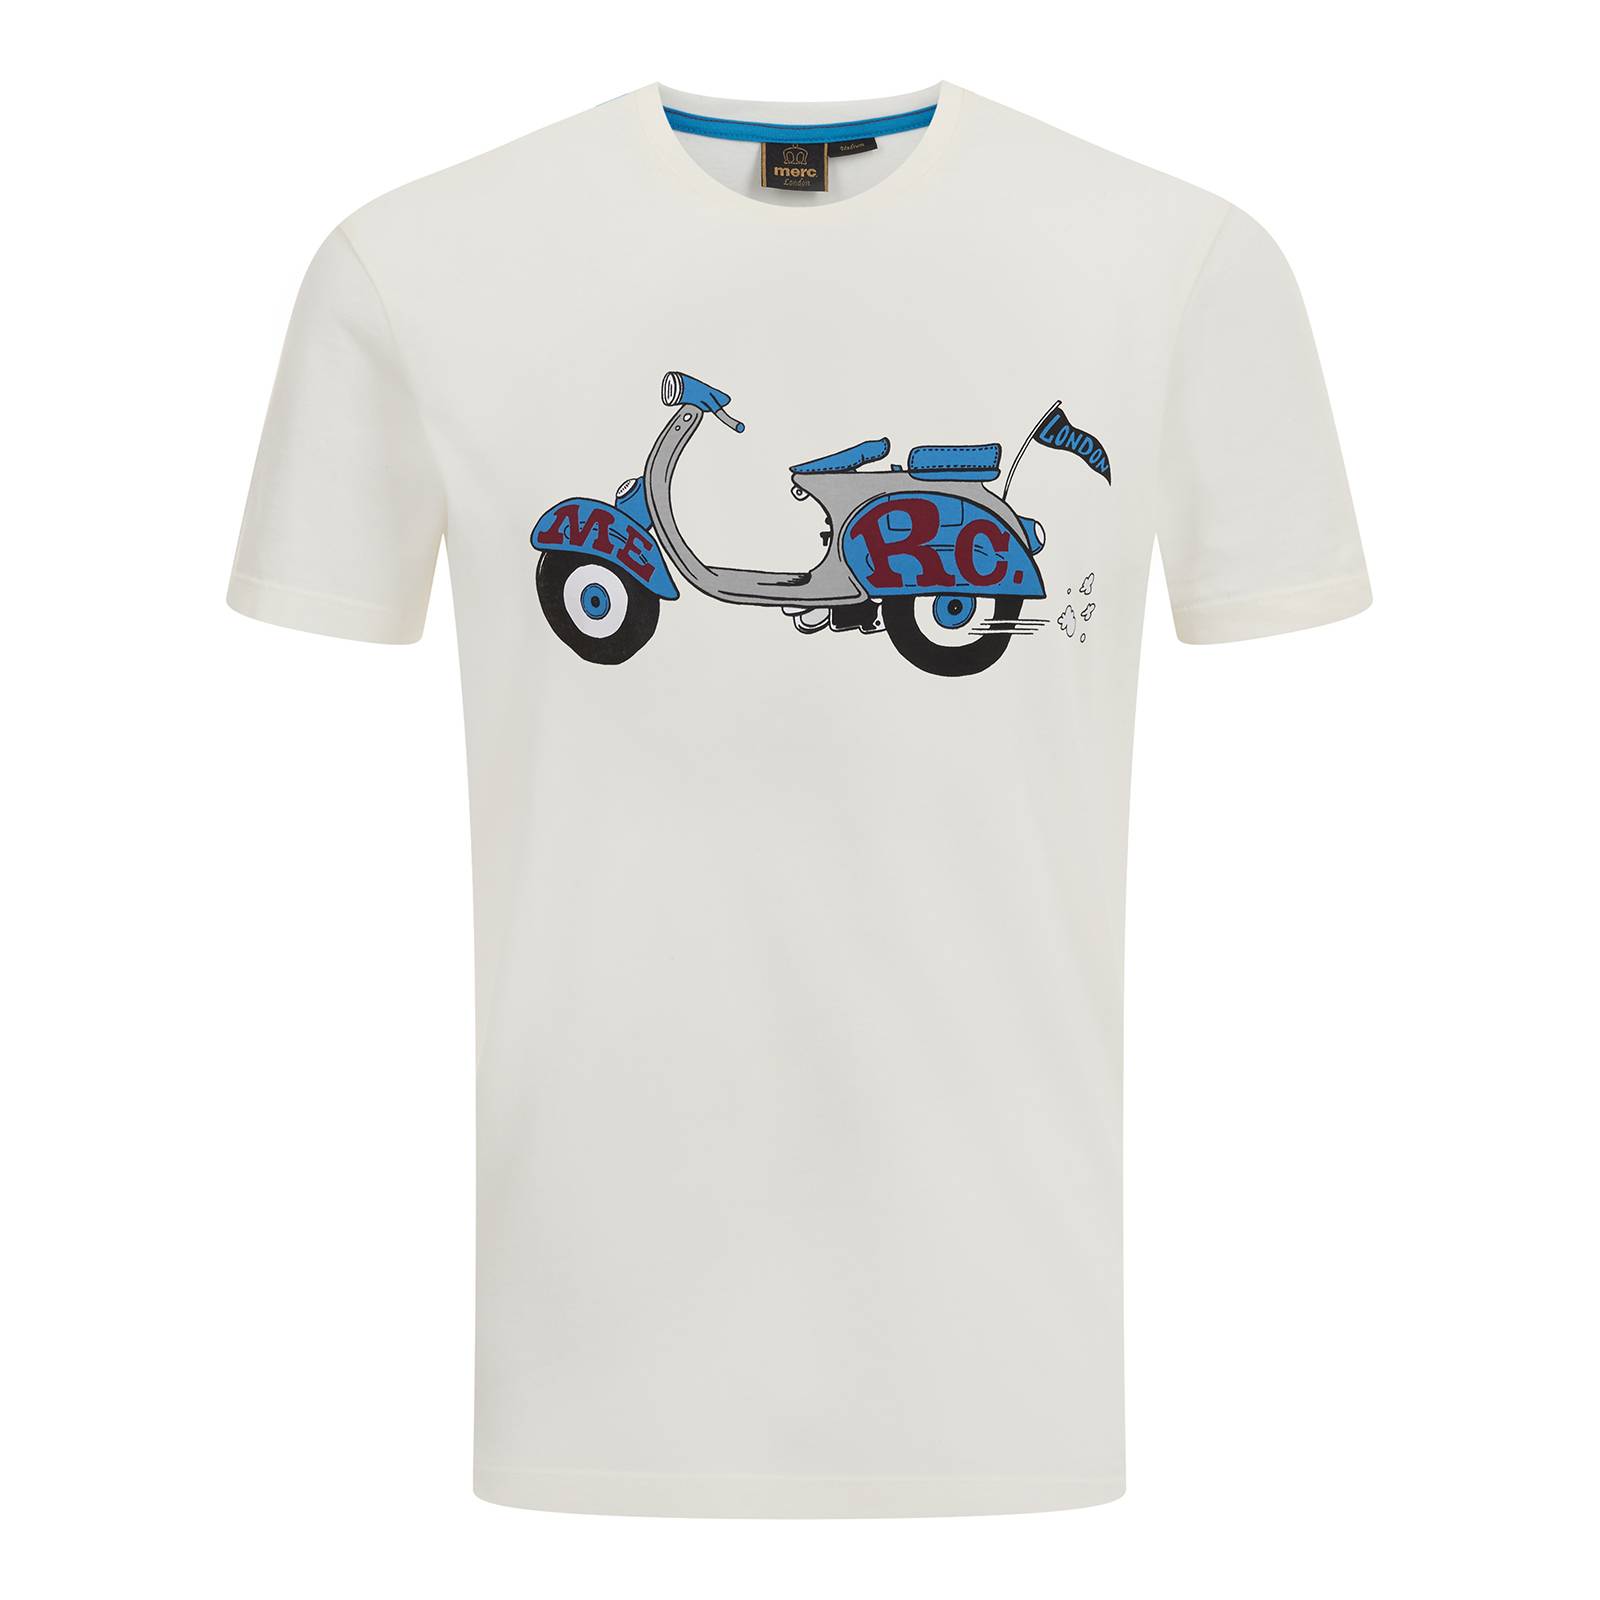 Мужская футболка с круглым воротом Sinclair из хлопка Джерси с поп-арт изображением скутера, белая, бренда MERC, купить на официальном сайте со СКИДКОЙ!